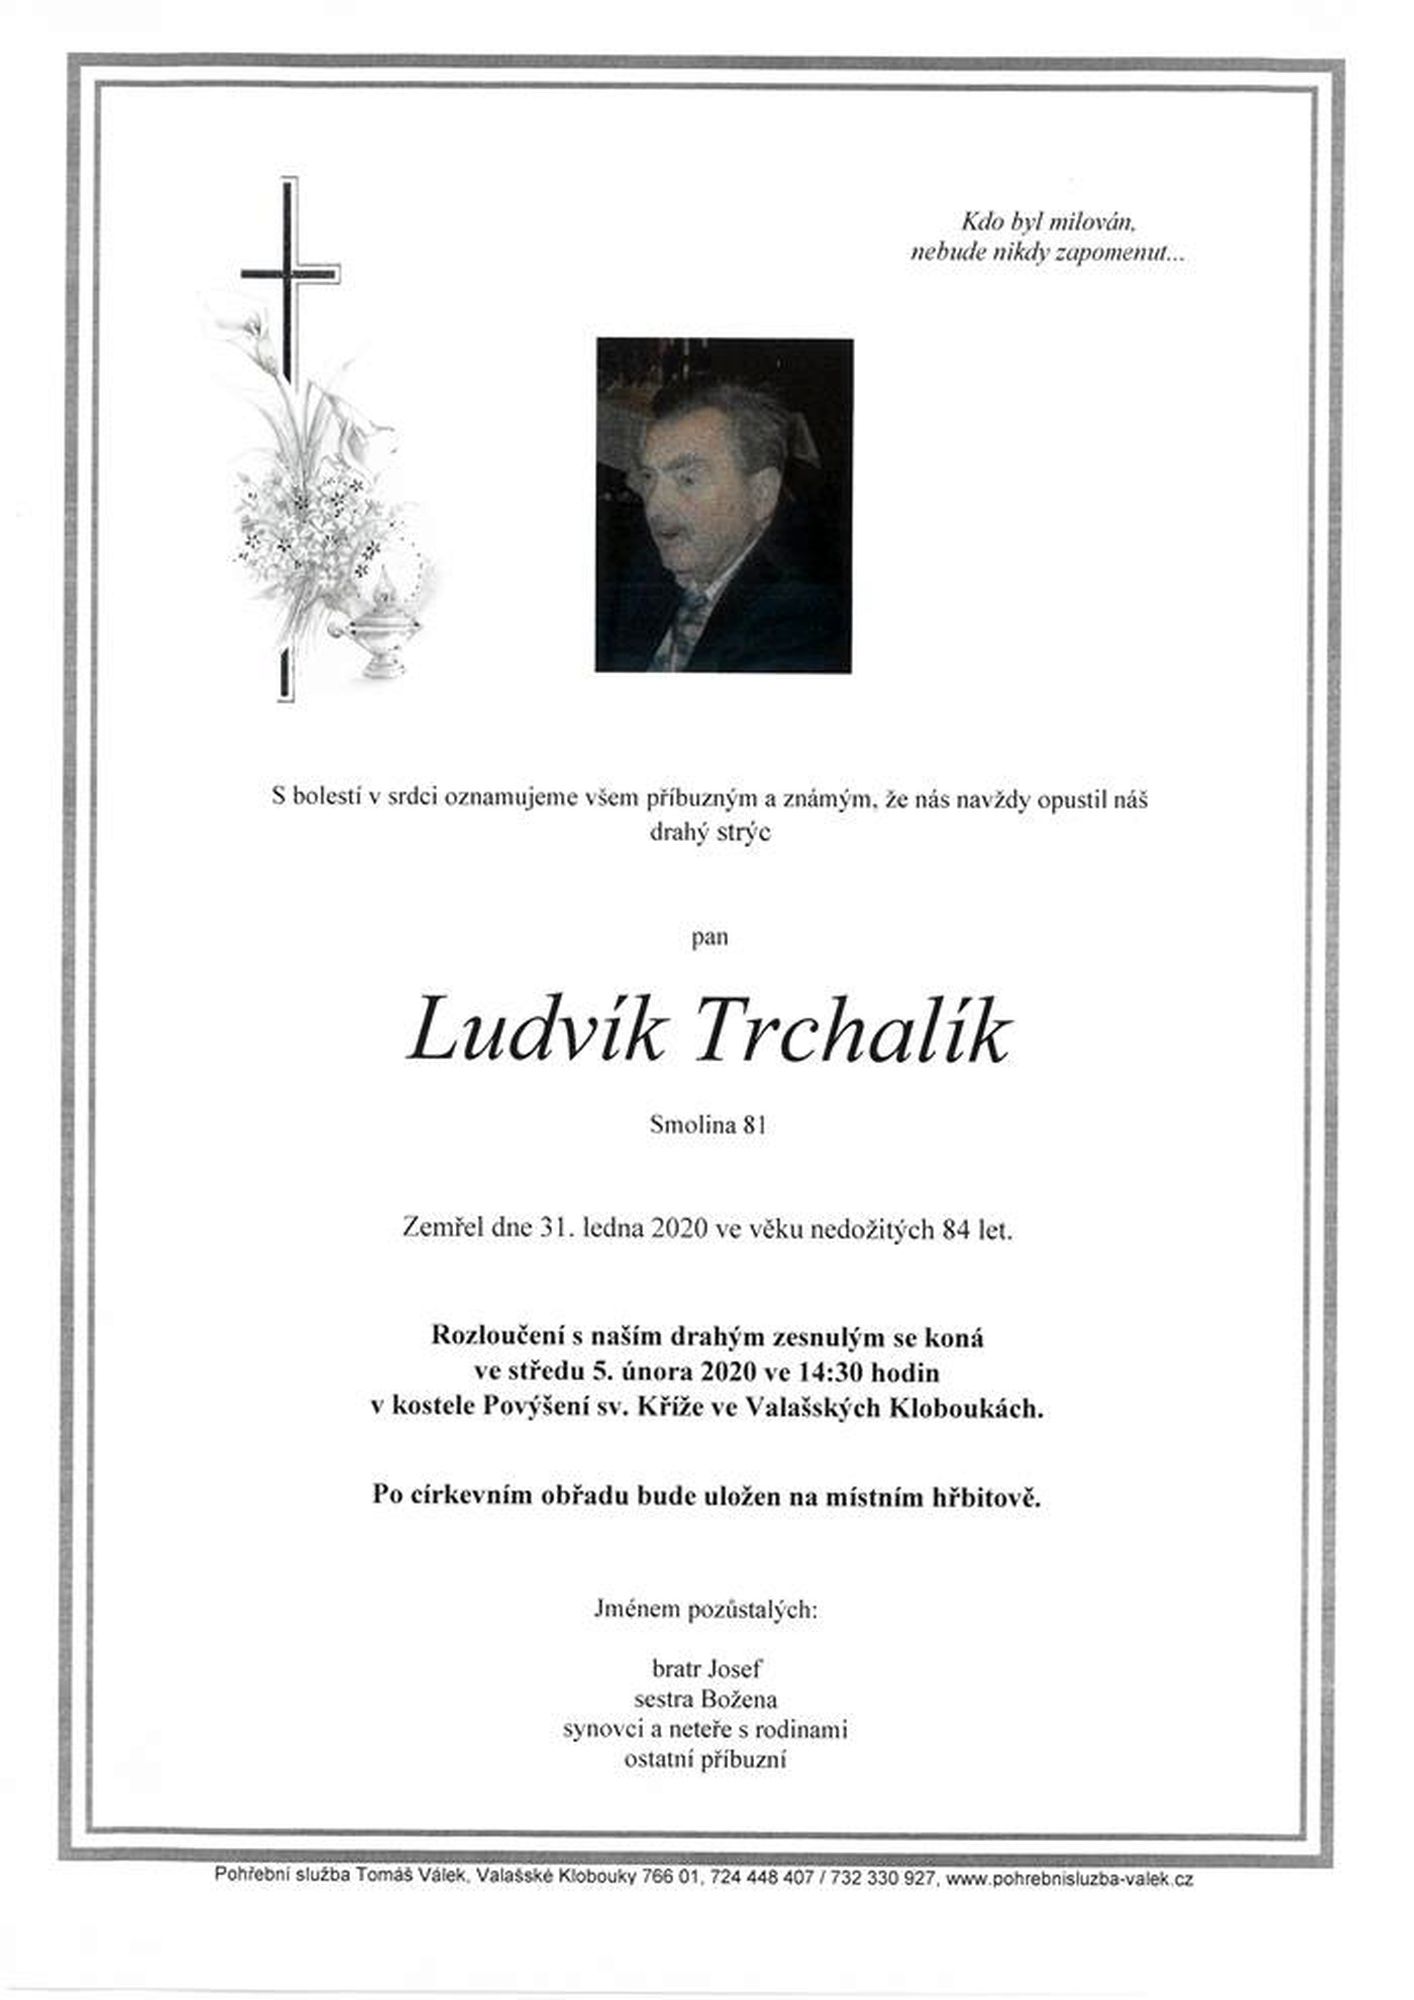 Ludvík Trchalík